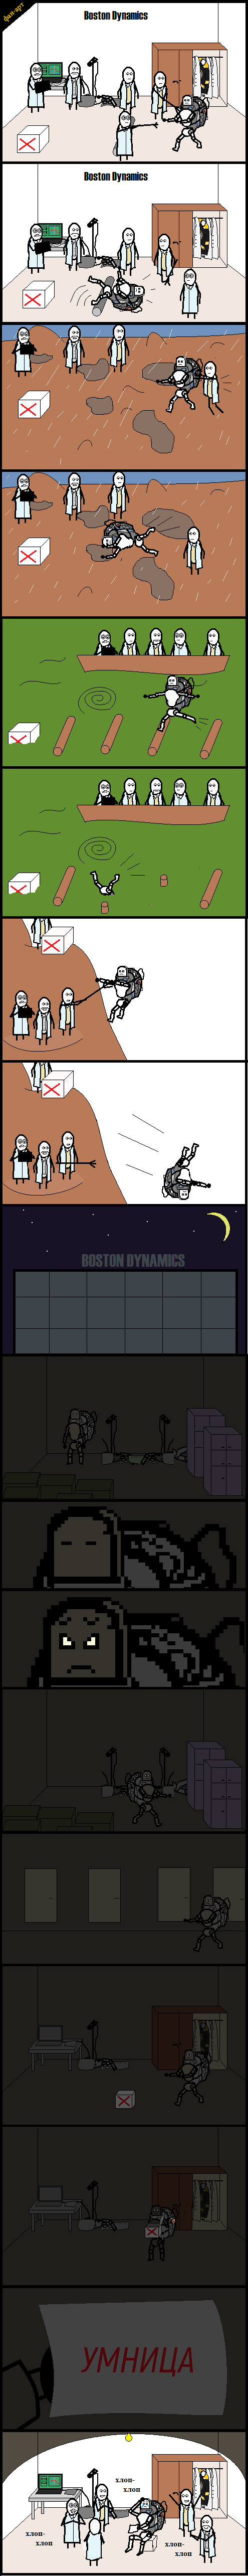  , CynicMansion, Boston Dynamics, 